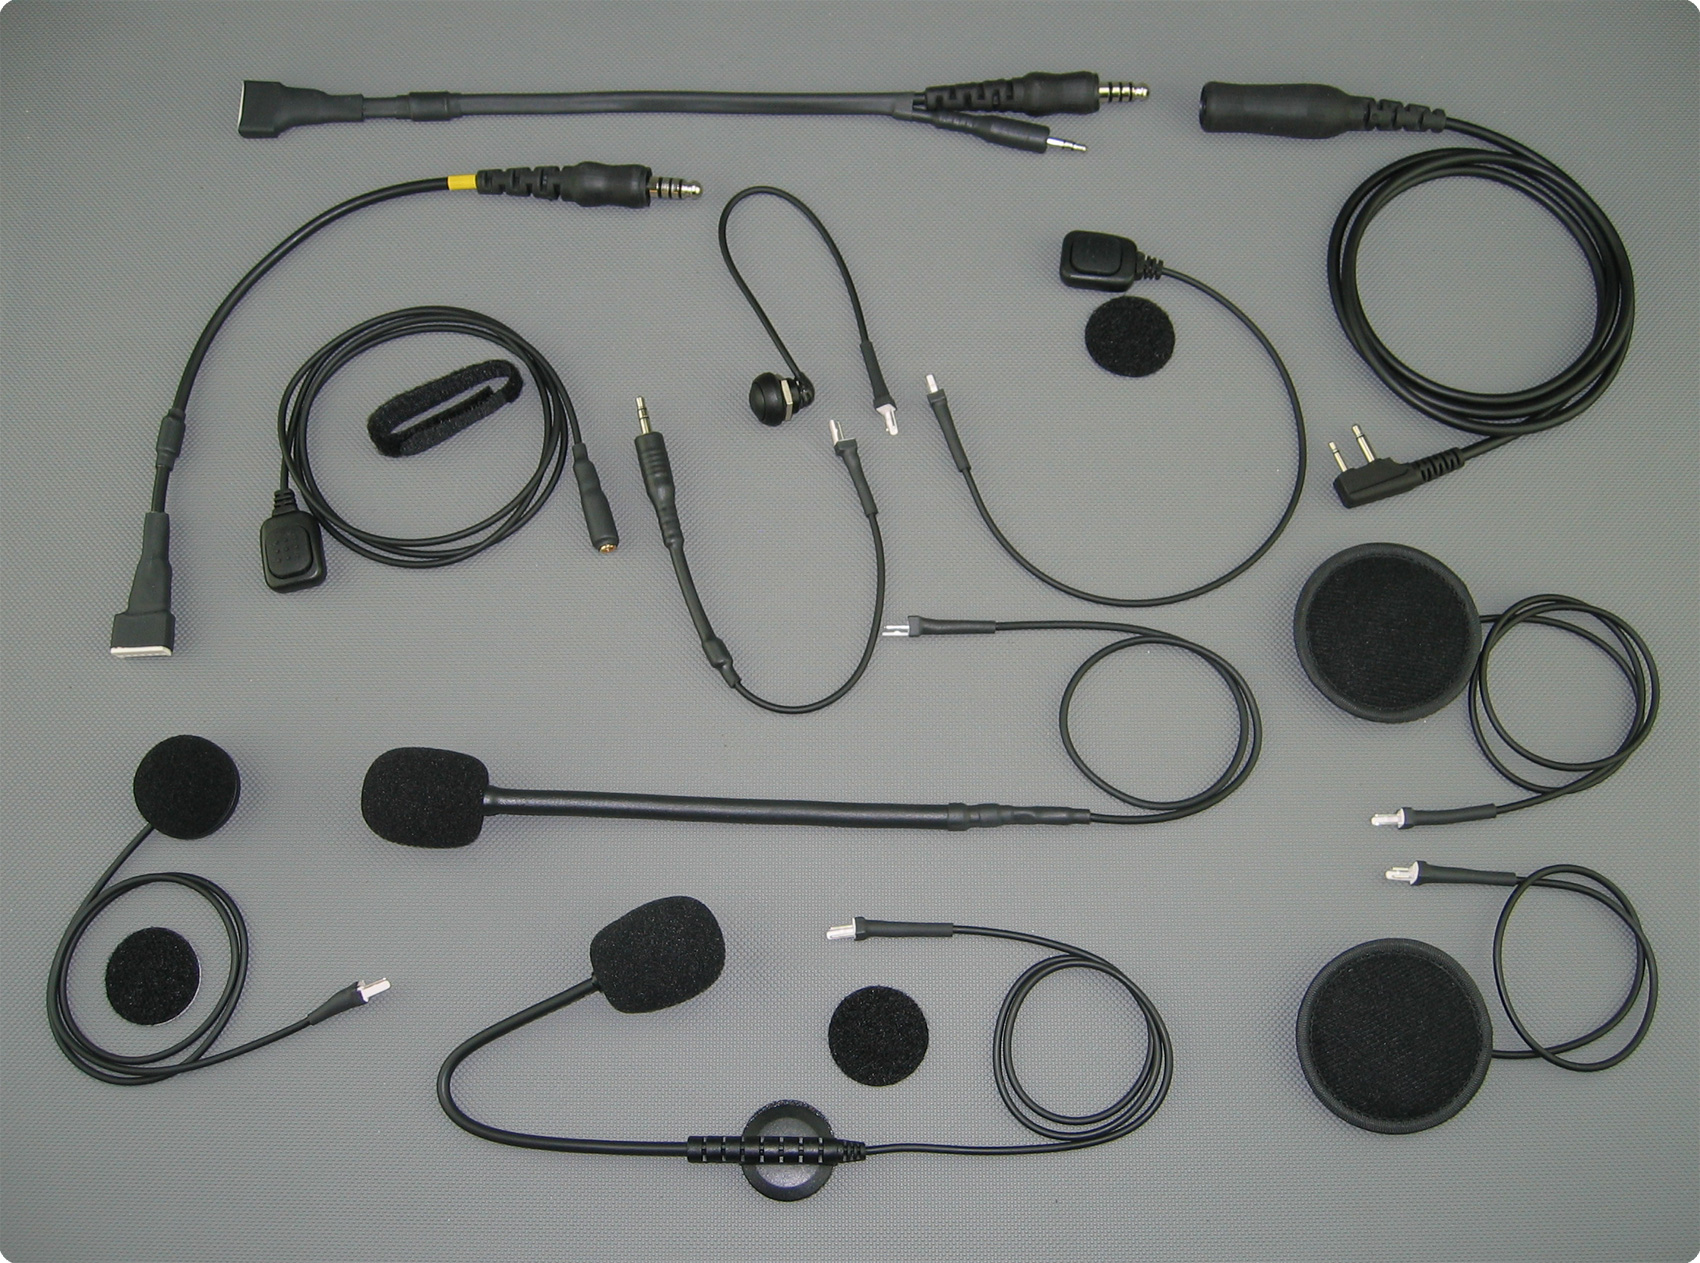 Servicio de instalación de auriculares, altavoces, micrófonos en cascos de Parapente